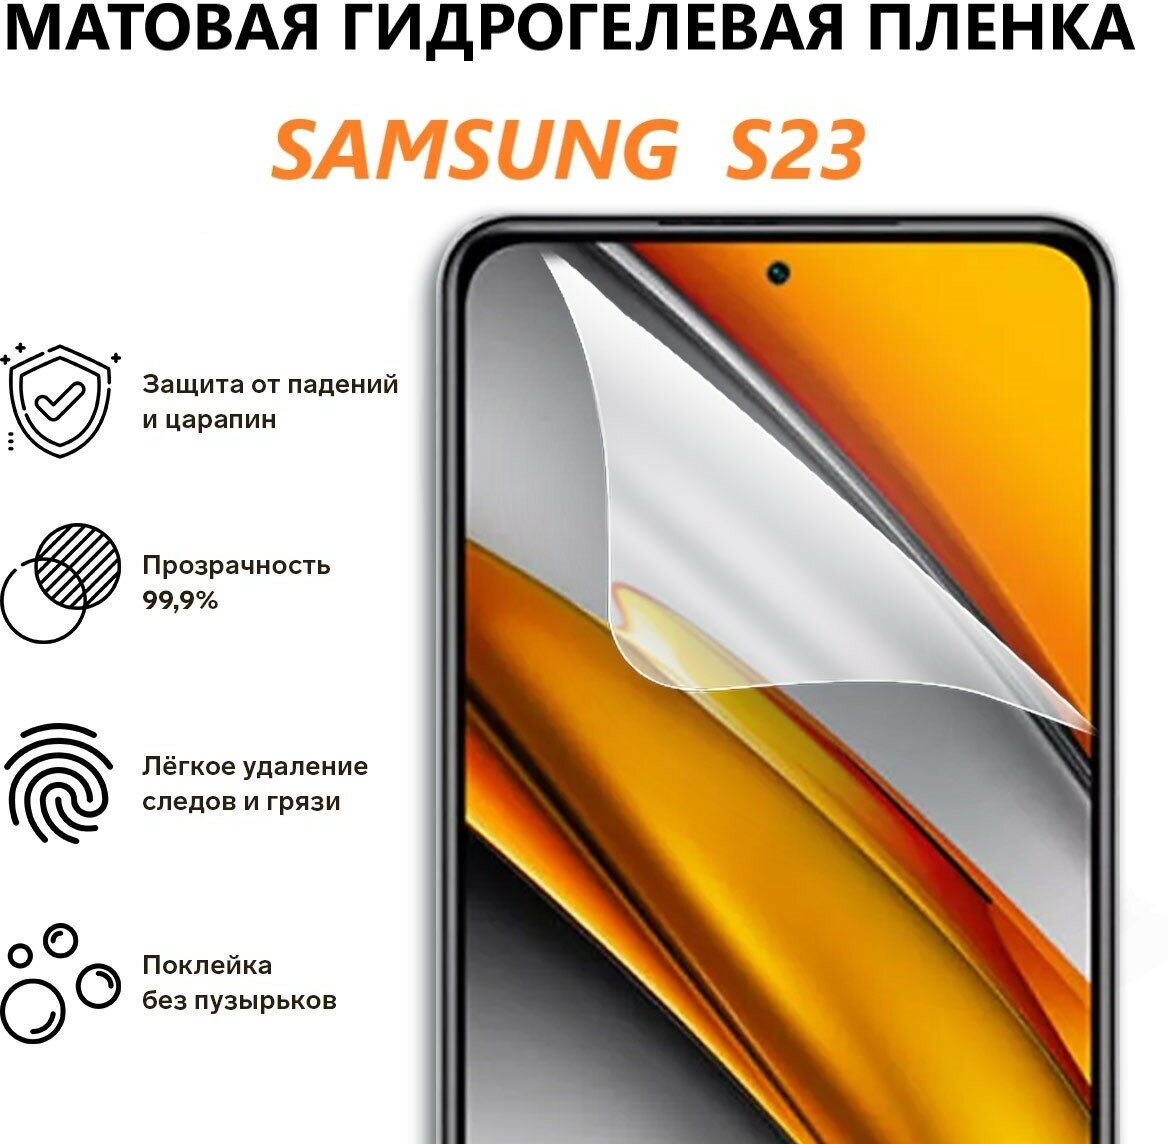 Матовая гидрогелевая защитная пленка для Samsung Galaxy S23 / Полноэкранная защита телефона